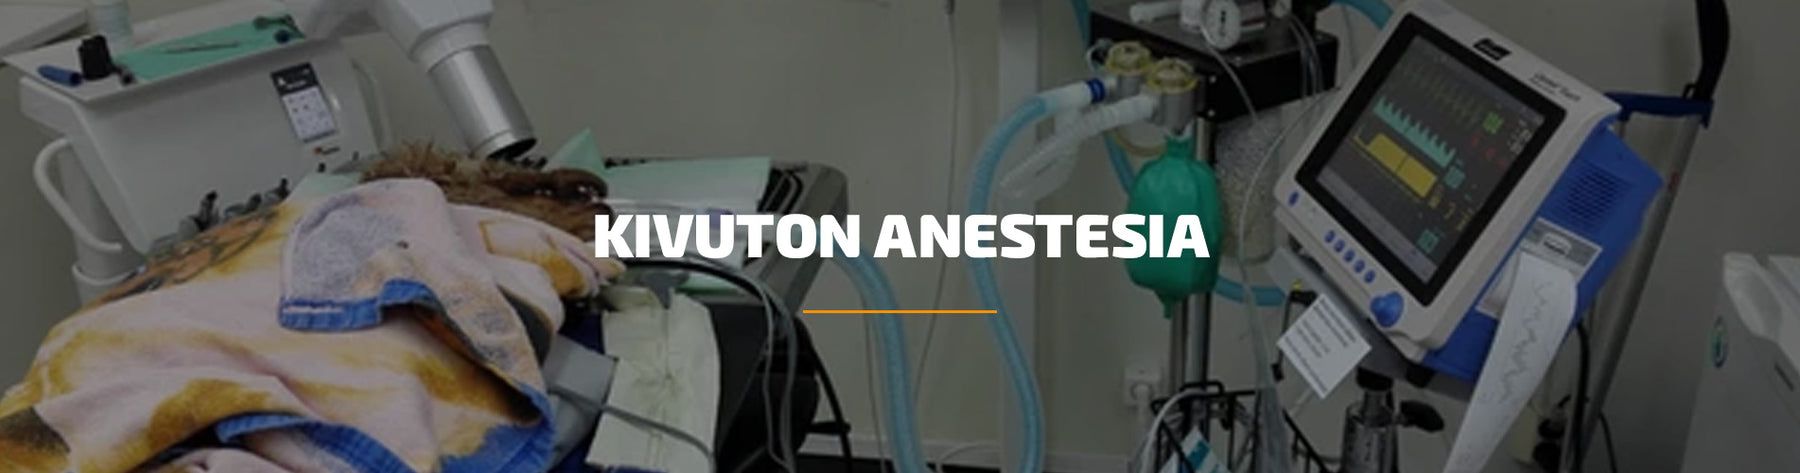 Kivuton anestesia